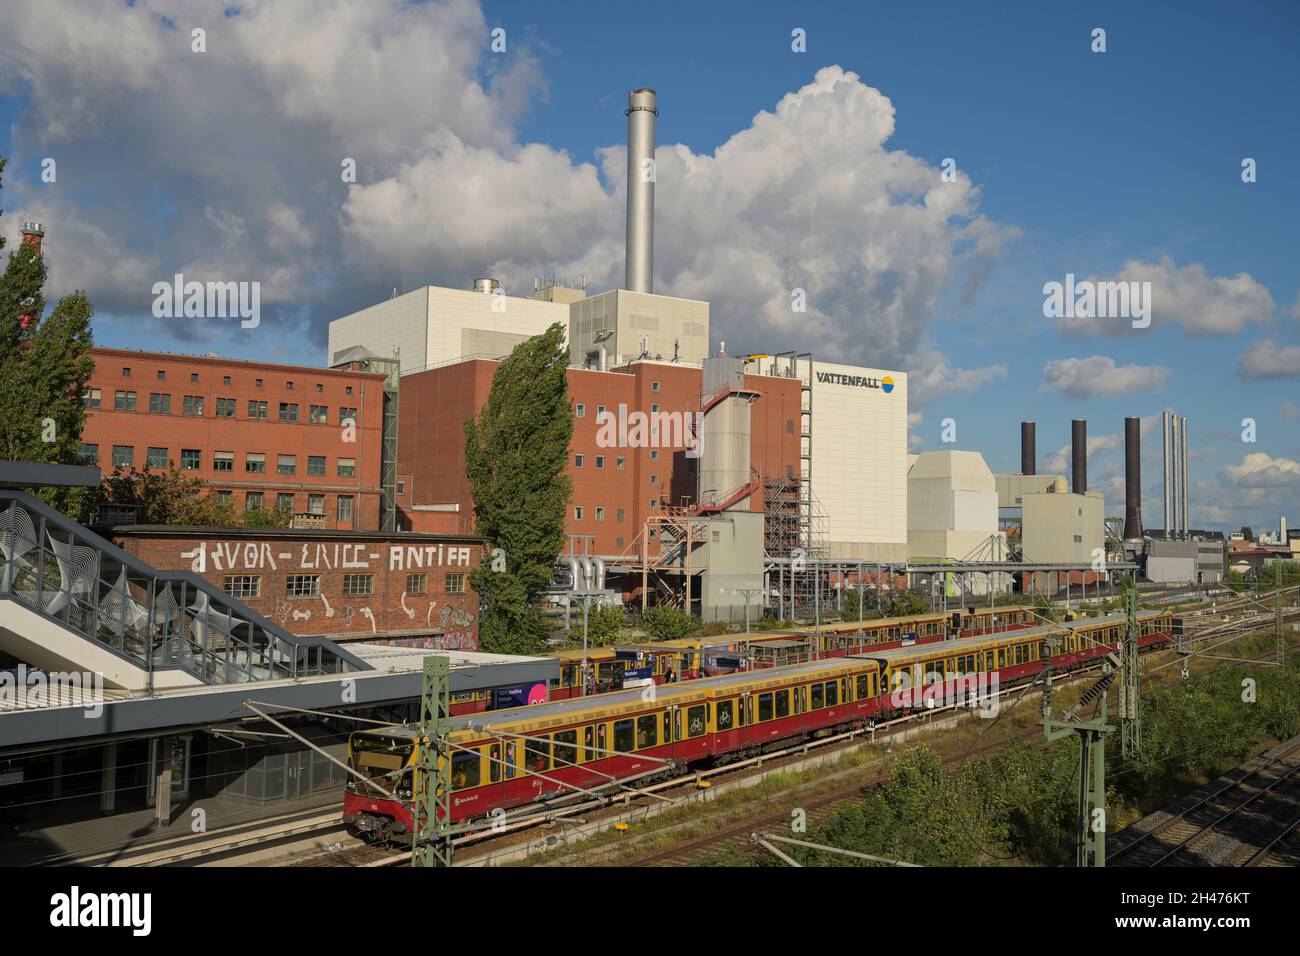 Heizkraftwerk Moabit, Friedrich-Krause-Ufer, Moabit, Berlin, Deutschland Stock Photo